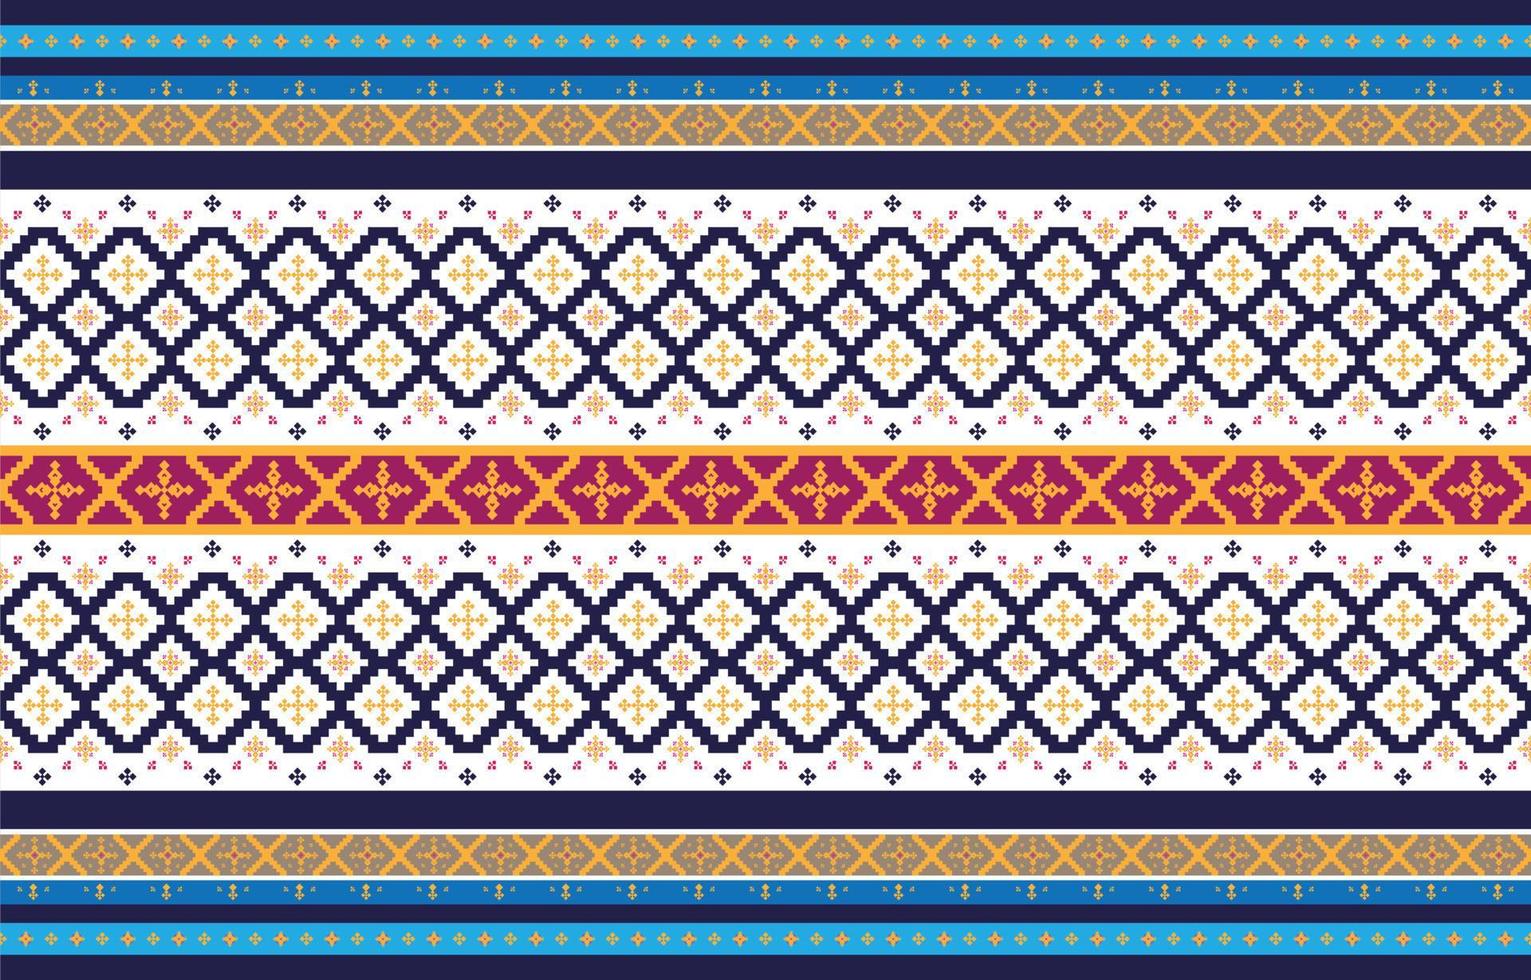 padrões geométricos e tribais abstratos, padrões de tecidos locais de design de uso, design inspirado em tribos indígenas. ilustração vetorial geométrica vetor